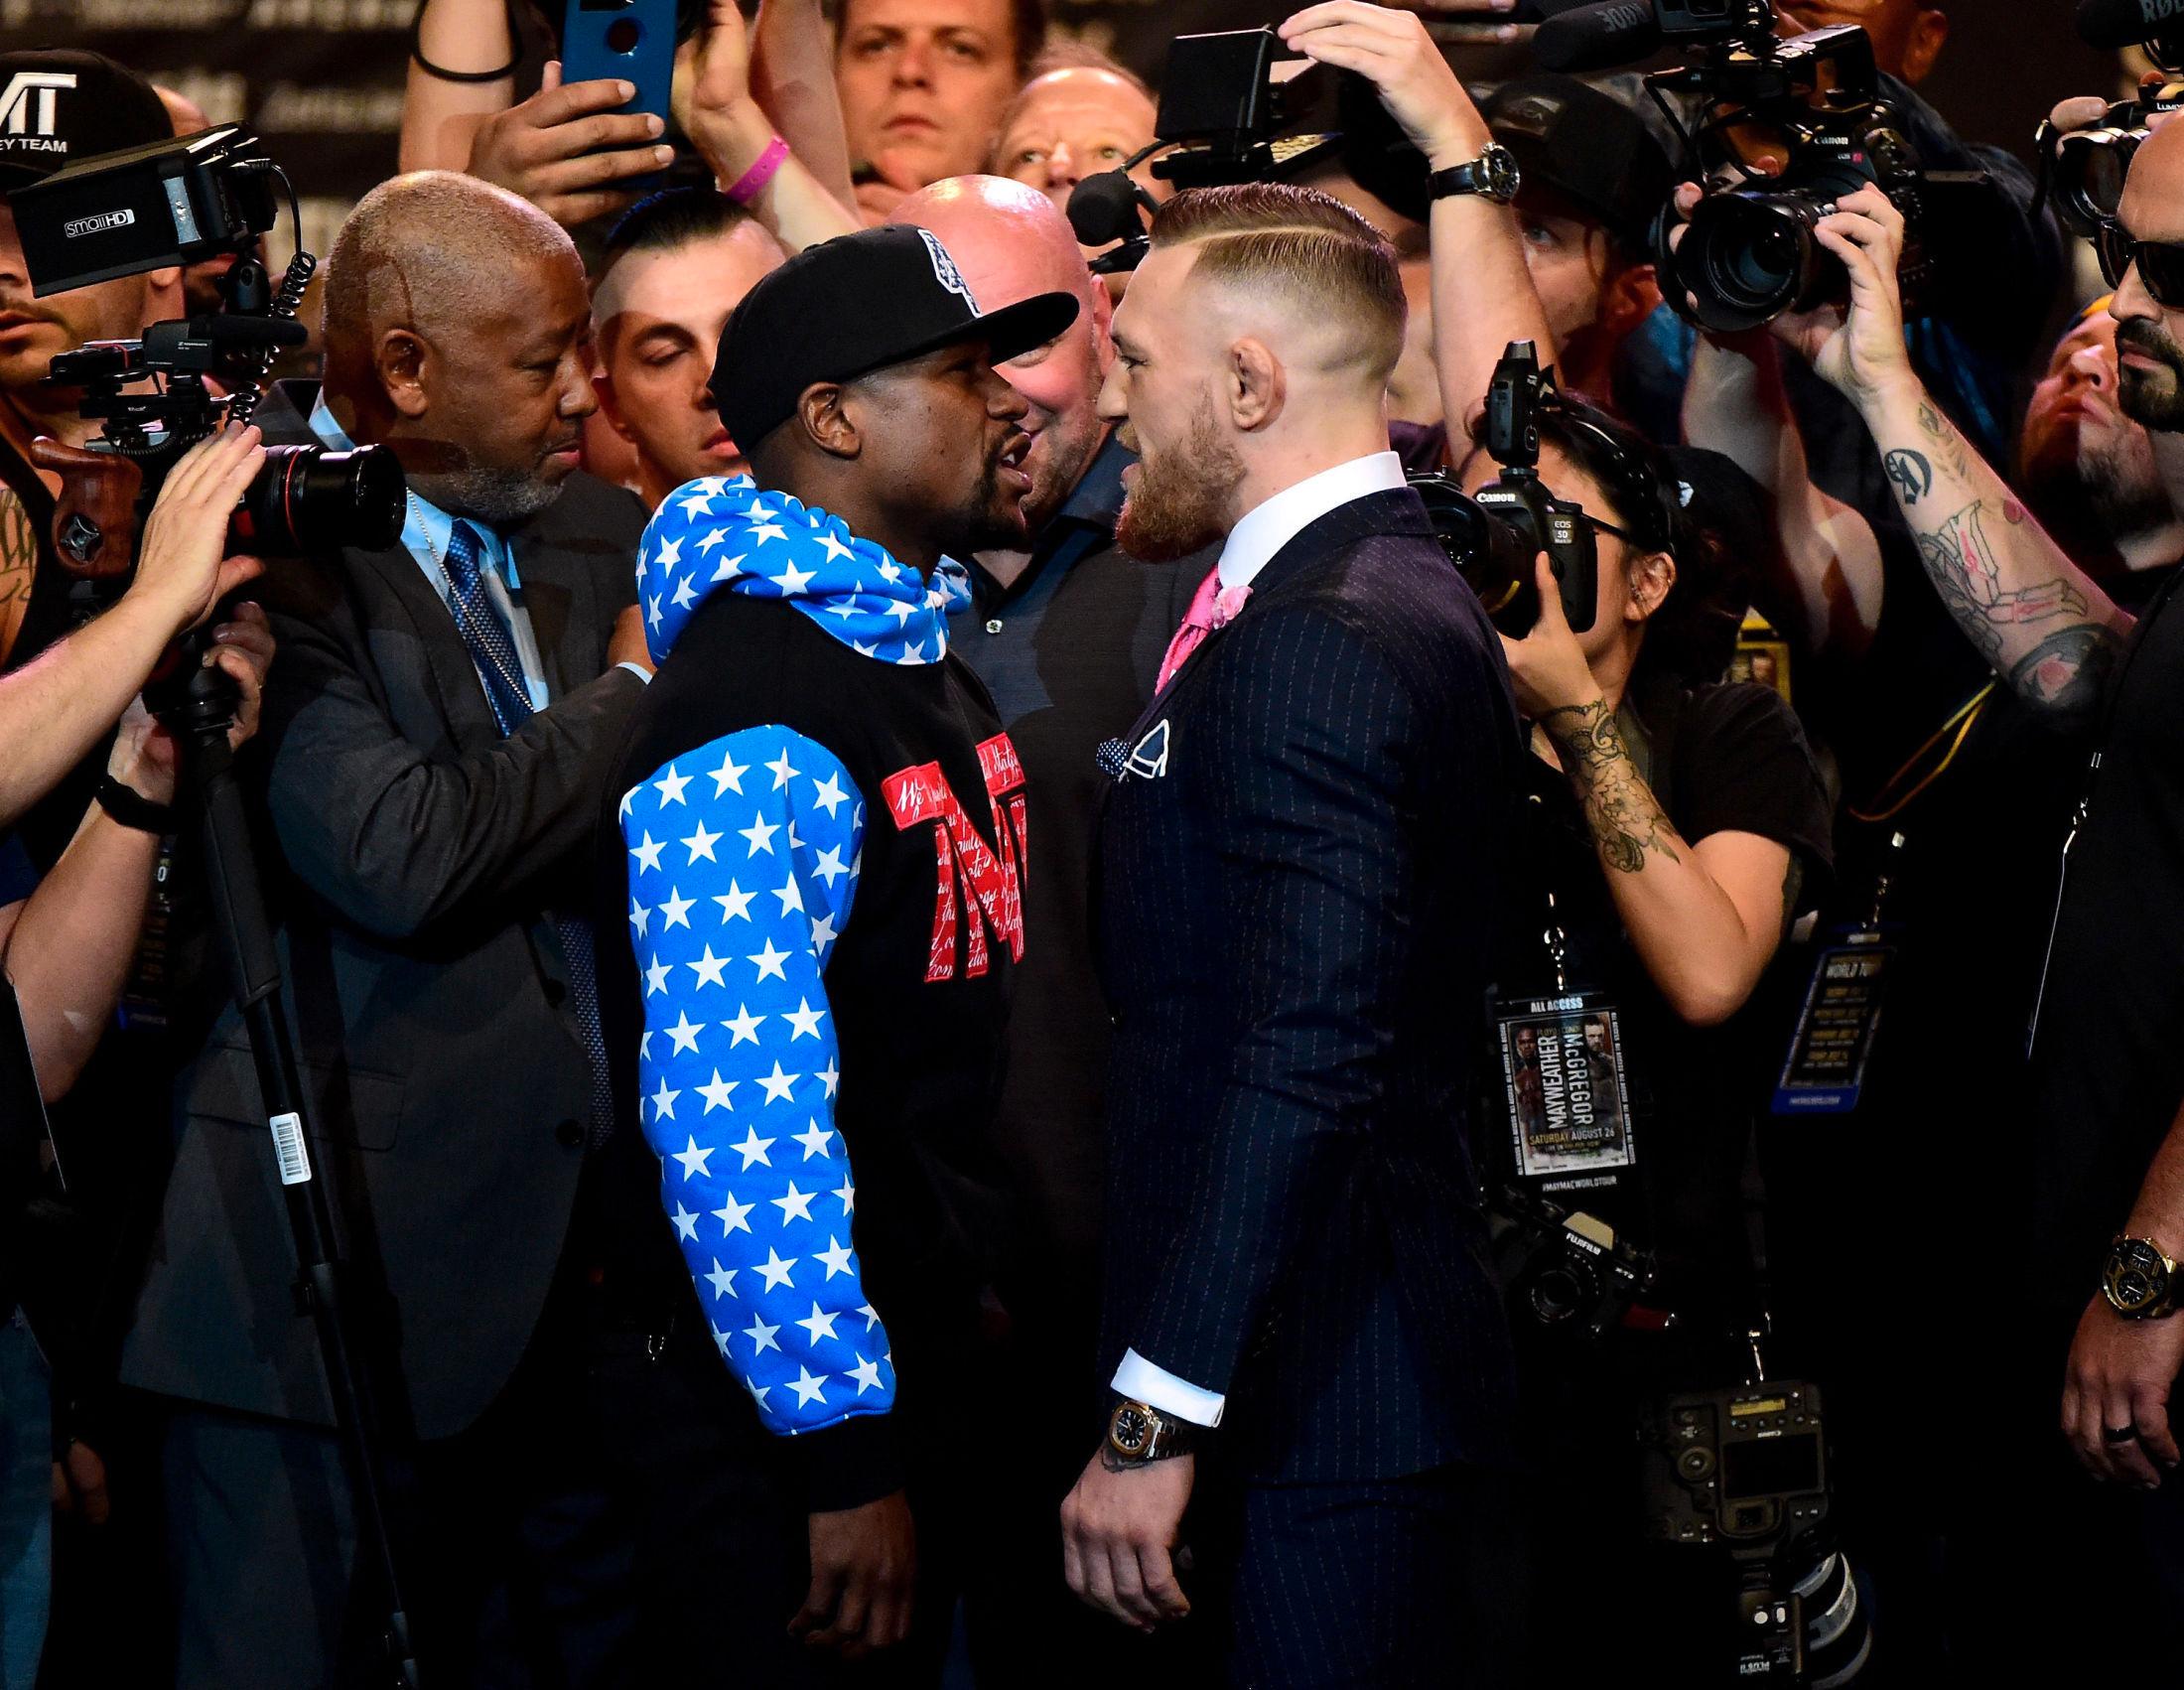 ENORM OPPMERKSOMHET: Møtet mellom Mayweather og McGregor er en av de mest omtalte boksekampene i nyere tid. Foto: Getty Images